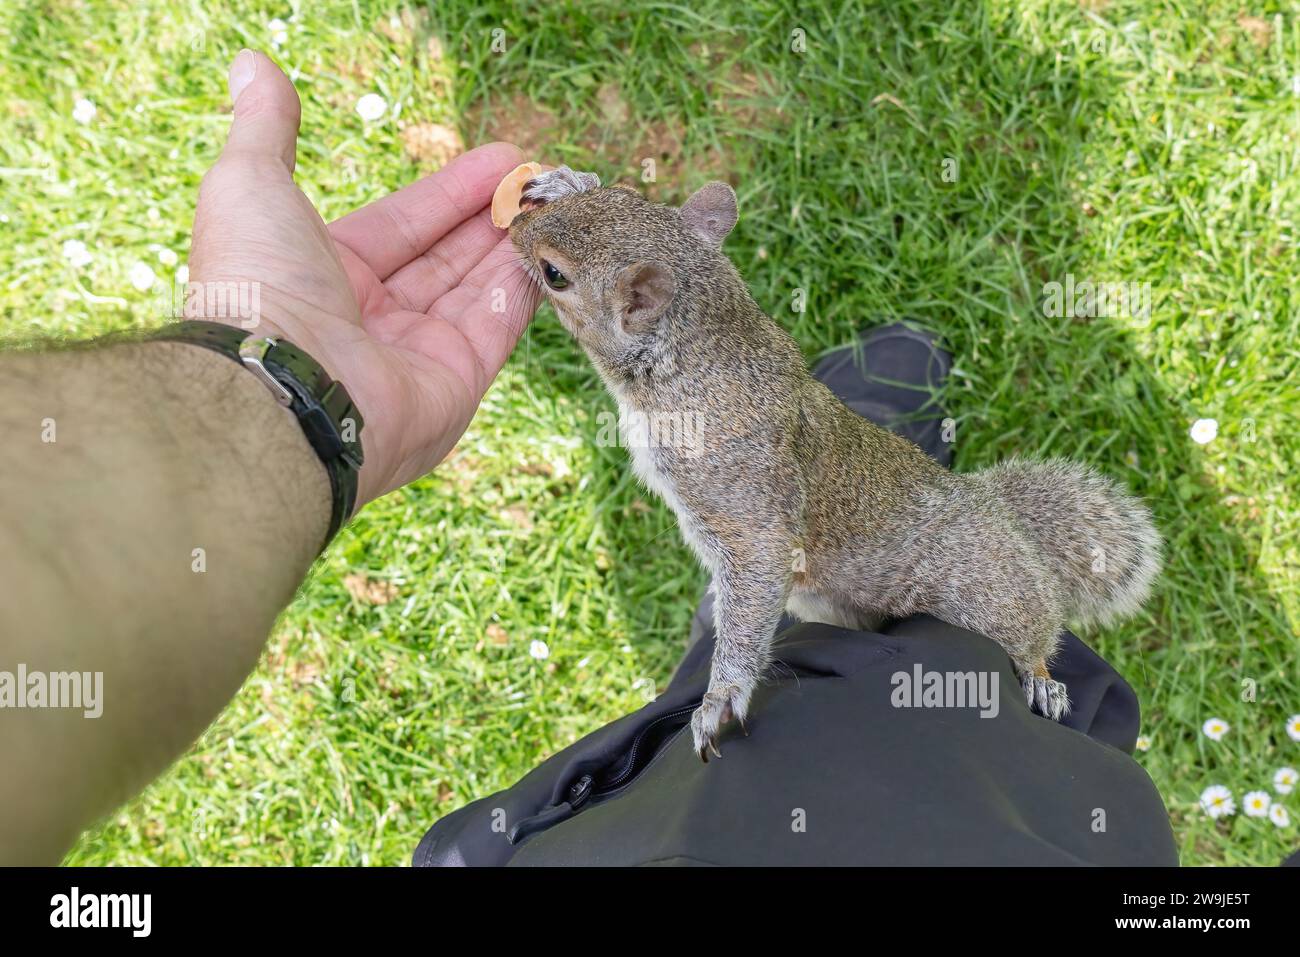 Uno scoiattolo grigio (Sciurus carolinensis) che sale alla gamba del fotografo e gli prende una mandorla dalla mano Foto Stock